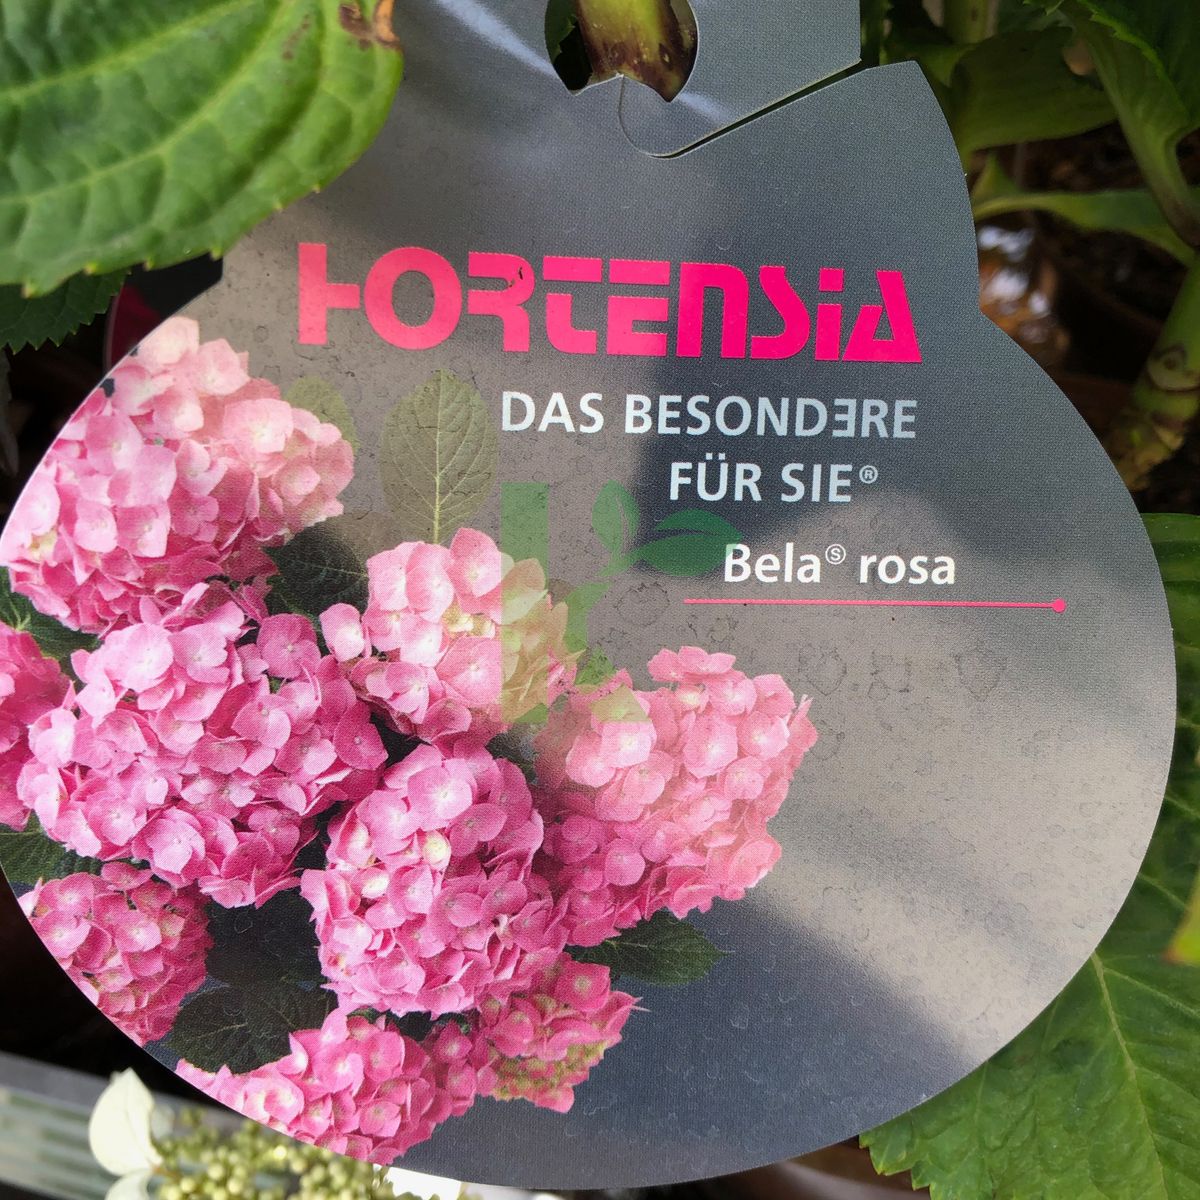 Hydrangea macrophylla `Bela rosa` (Hortensja ogrodowa)